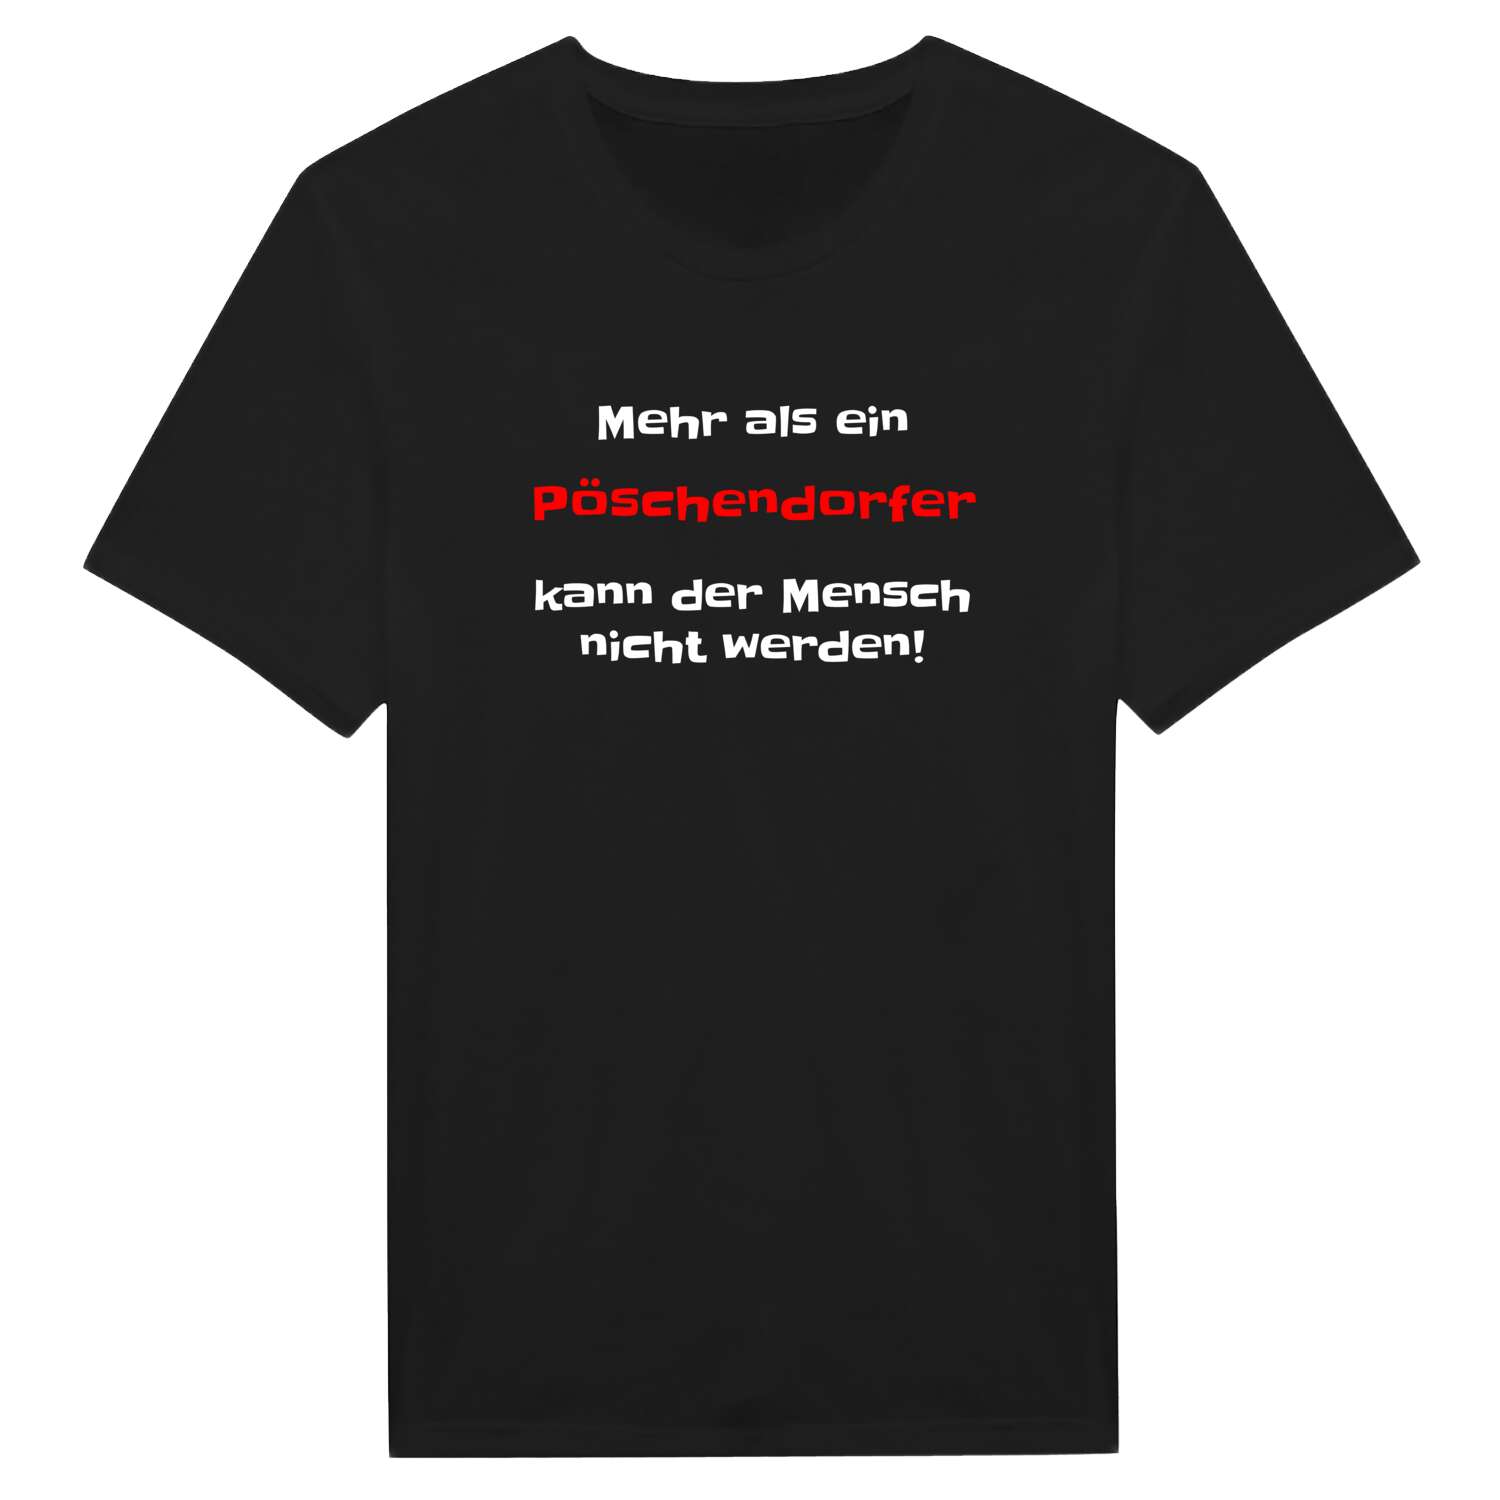 Pöschendorf T-Shirt »Mehr als ein«